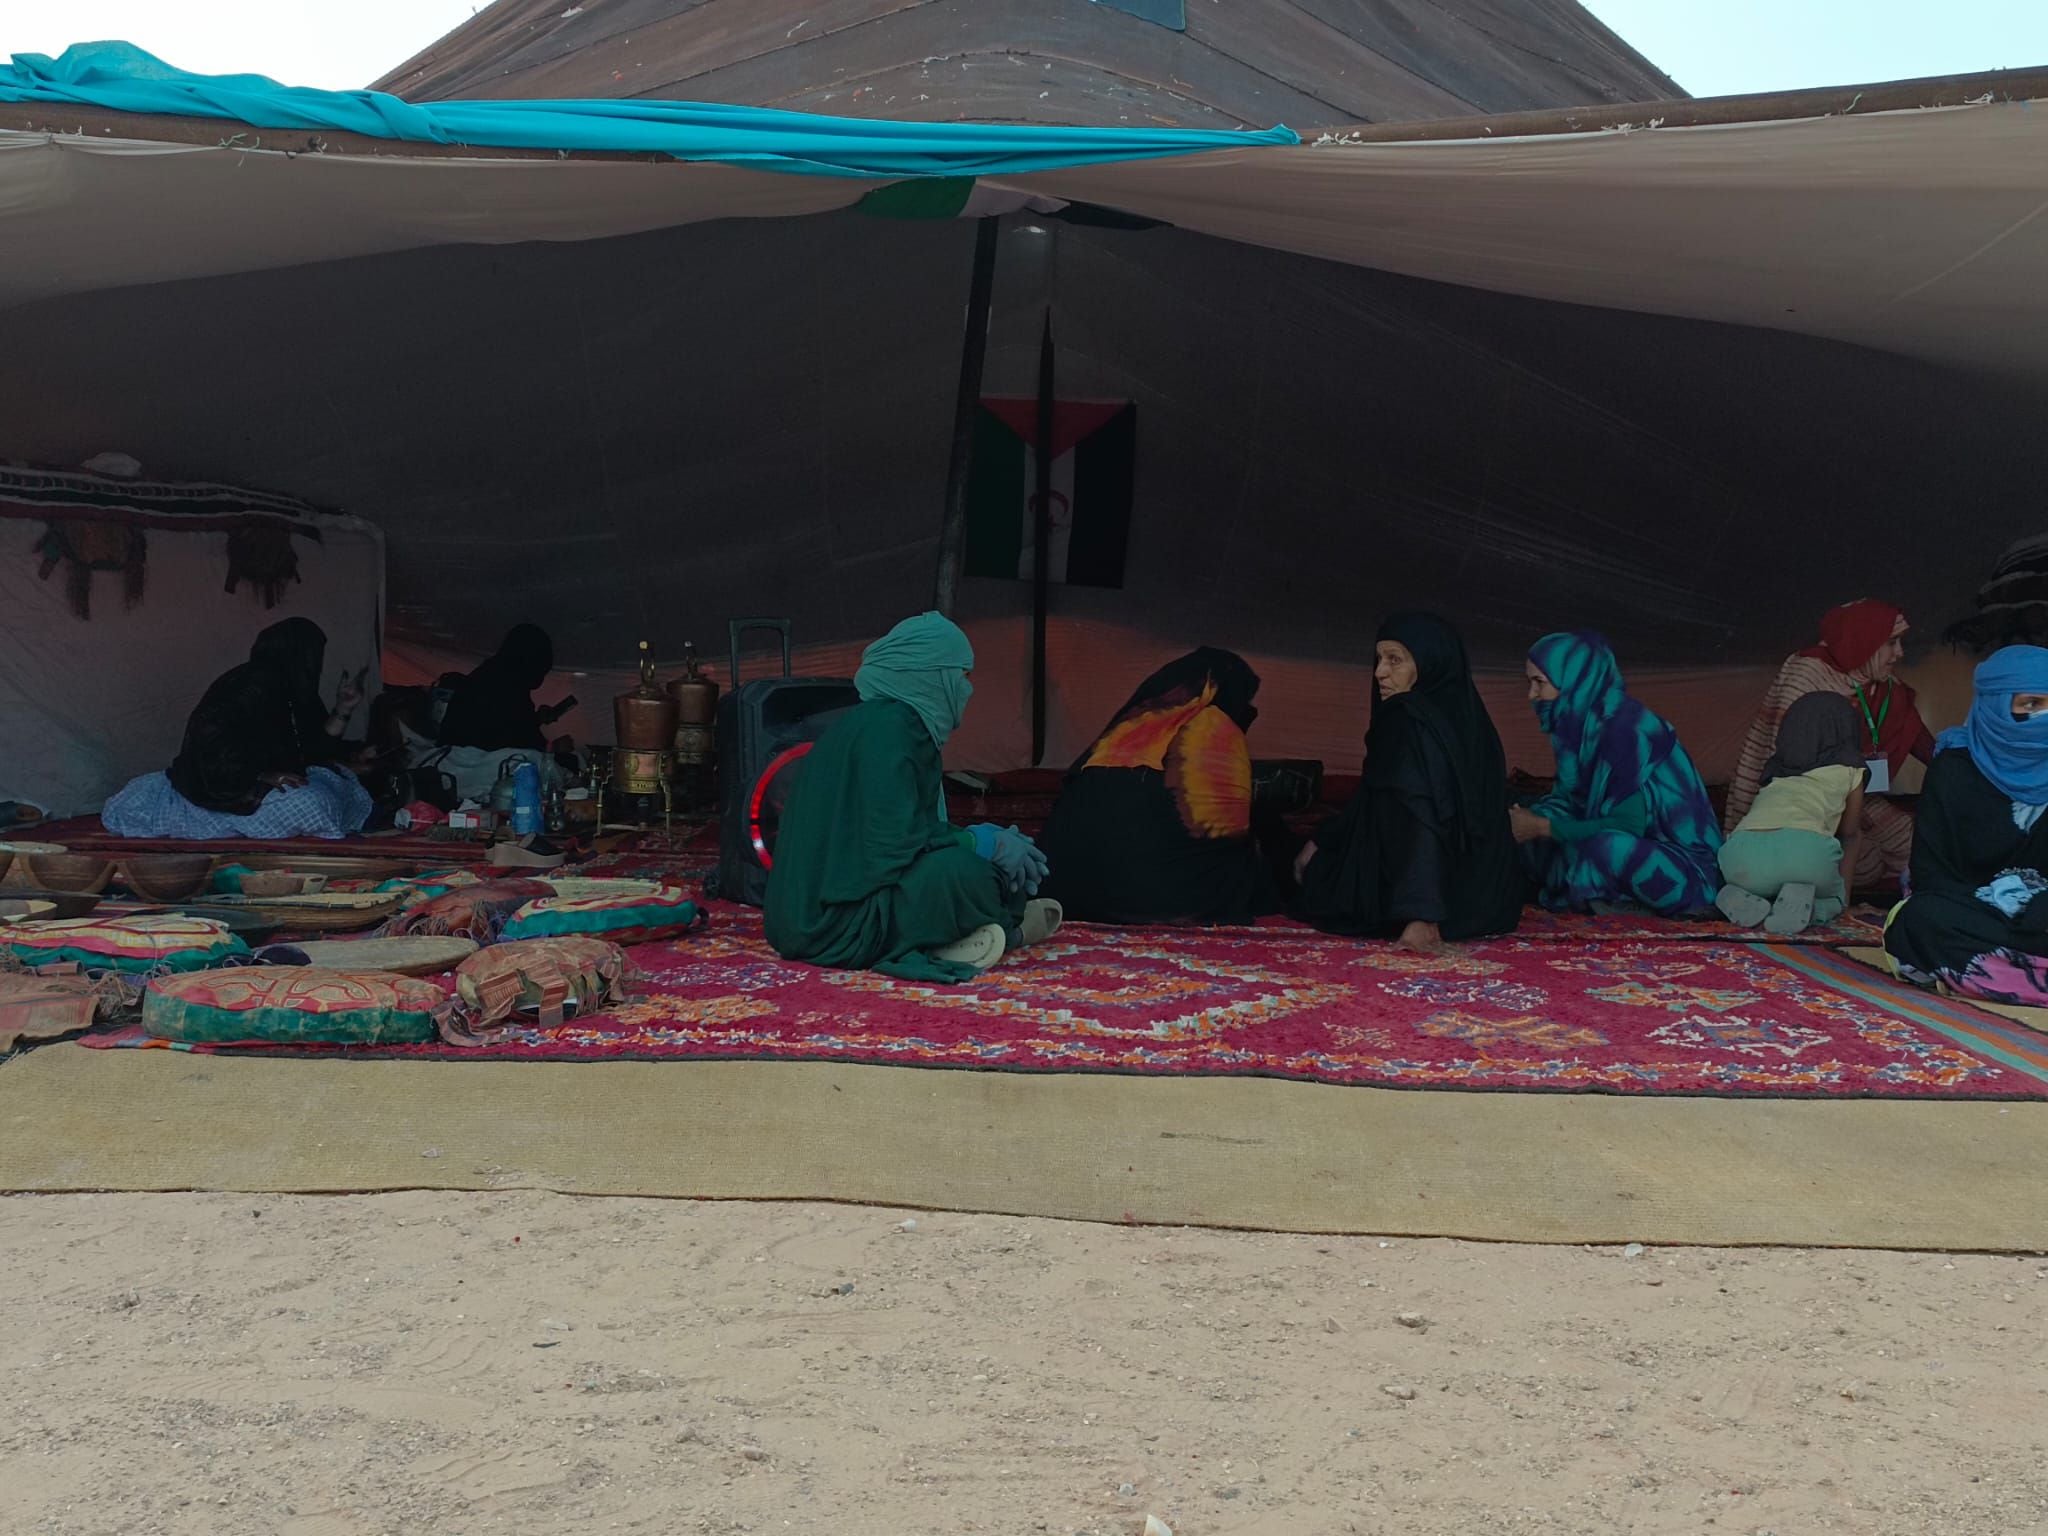 Campo de refugiados de Ausserd, cerca de Tinfuf, en Argelia. (María García Arenales)